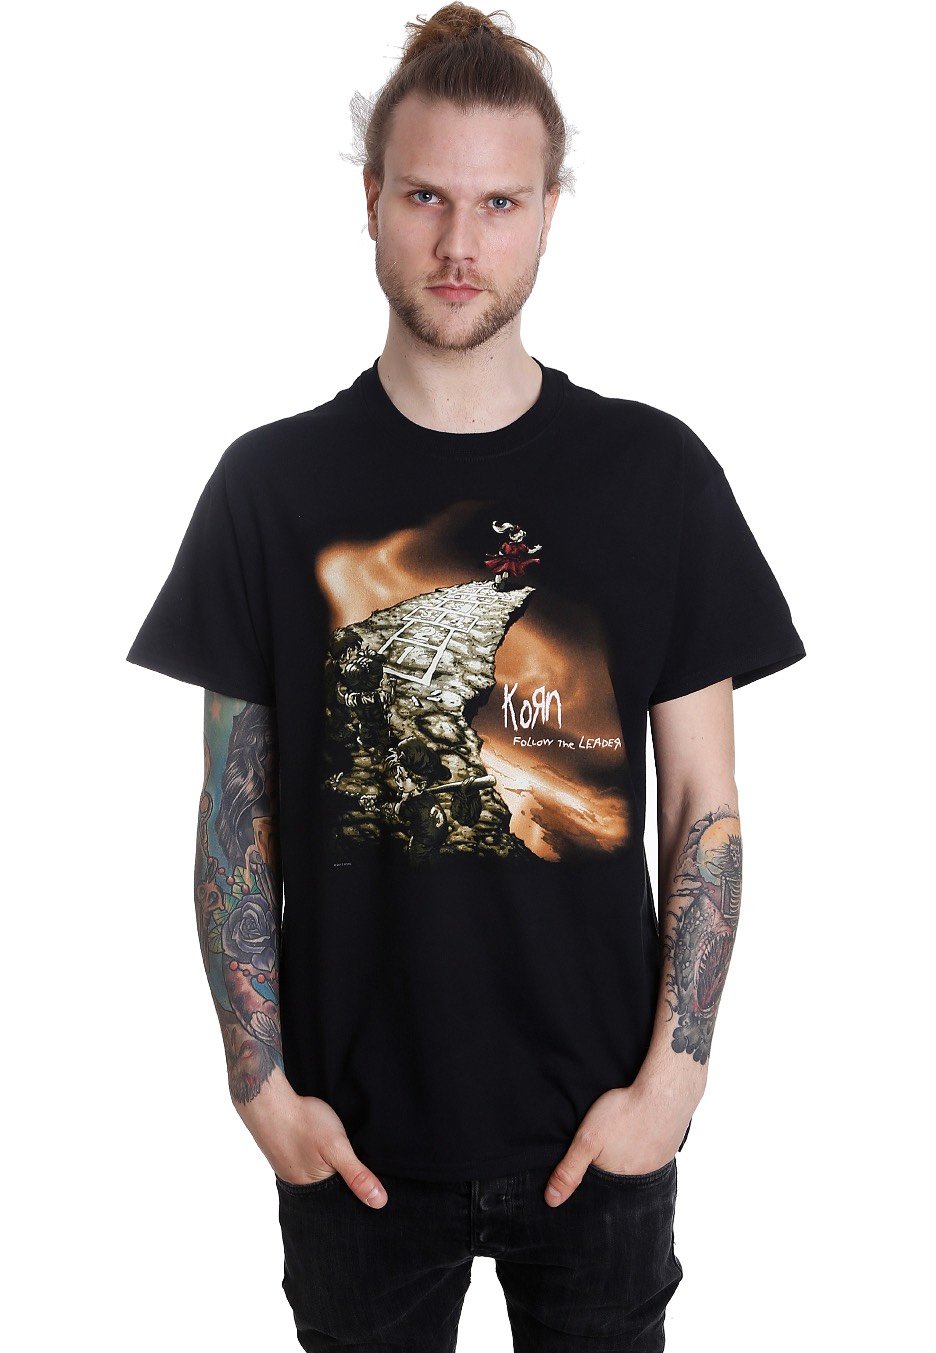 Korn - Follow The Leader - T-Shirt